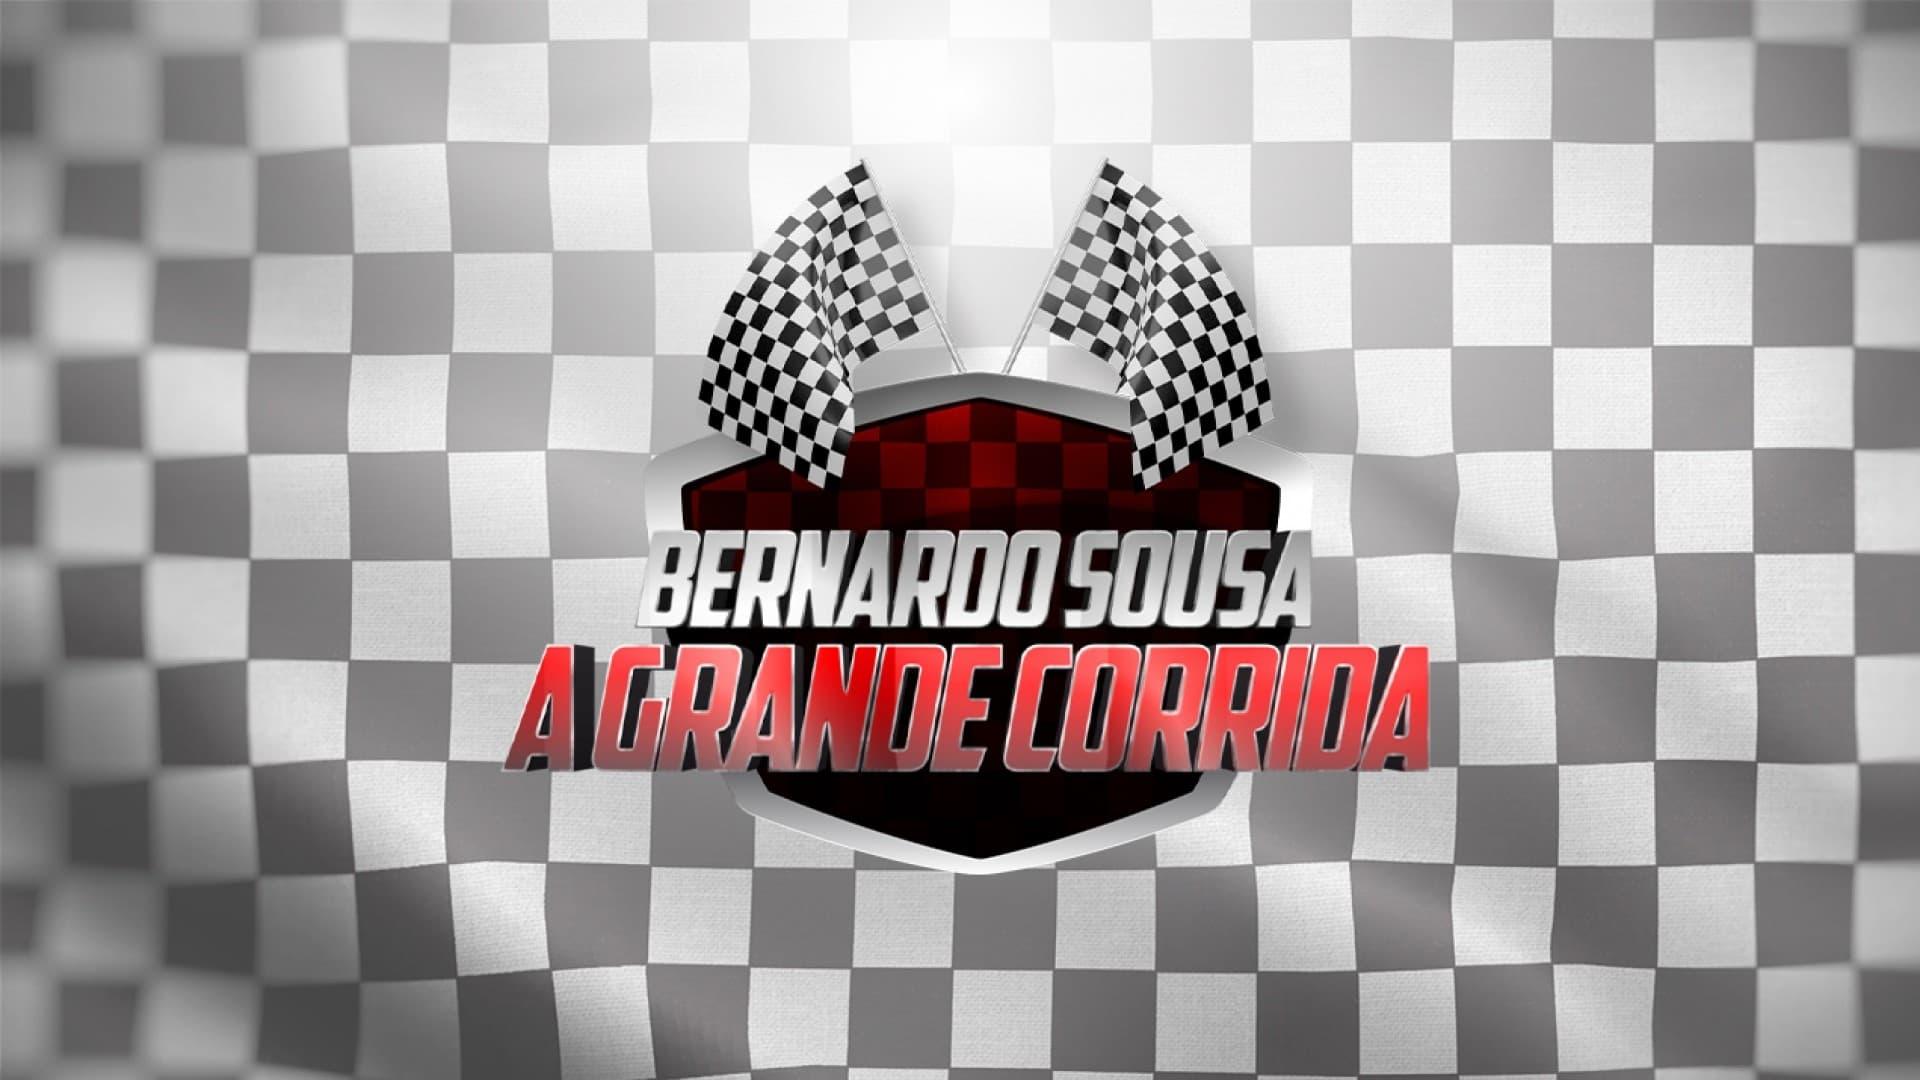 Bernardo Sousa: A Grande Corrida backdrop